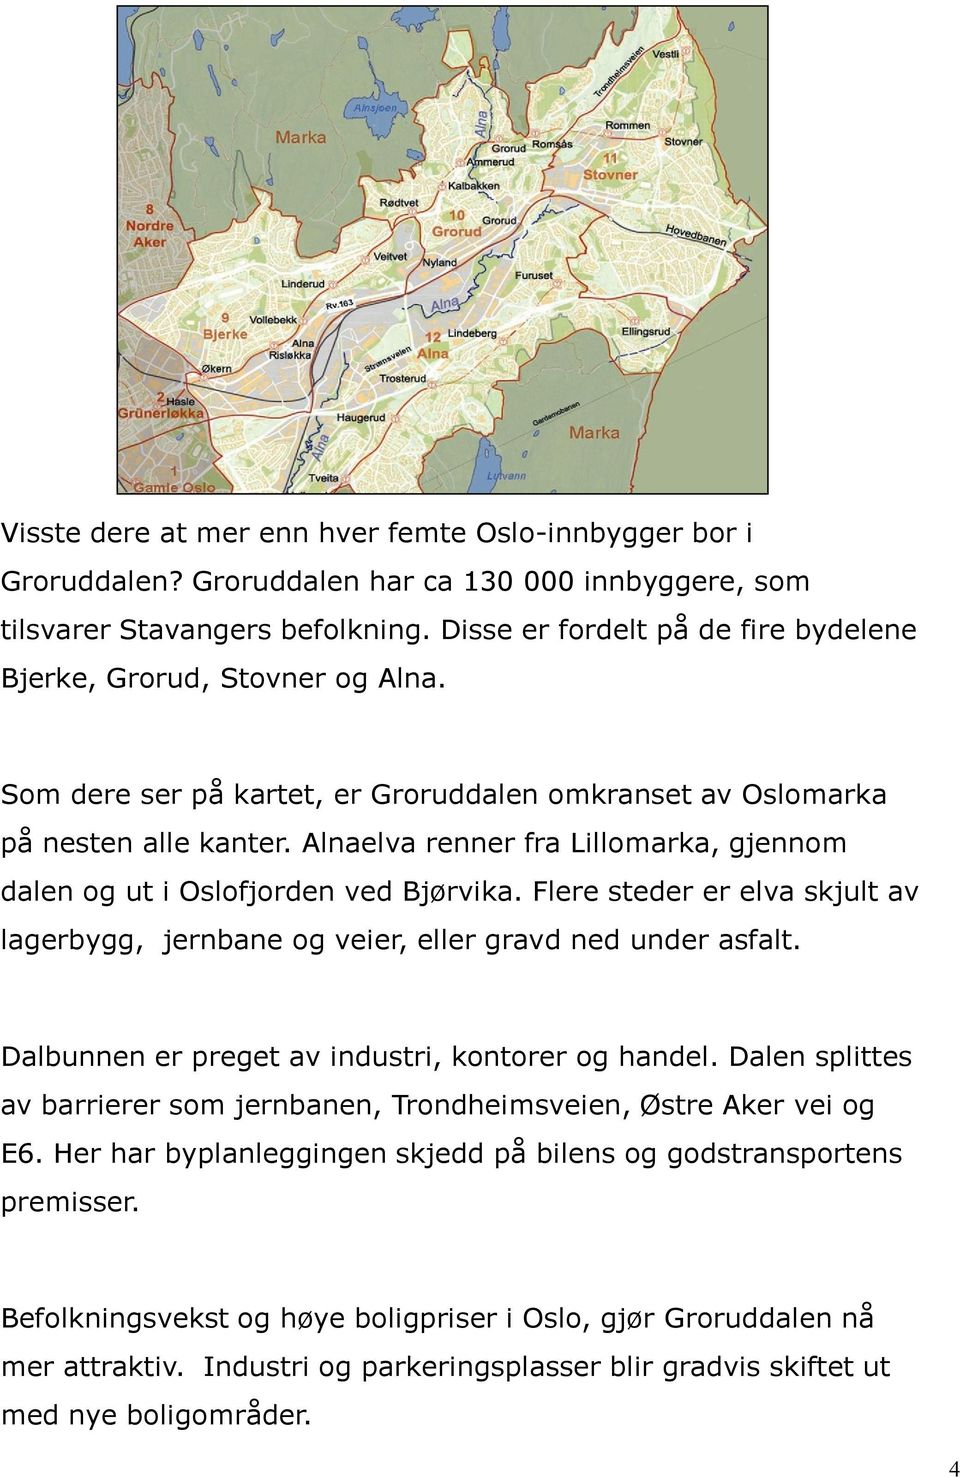 Alnaelva renner fra Lillomarka, gjennom dalen og ut i Oslofjorden ved Bjørvika. Flere steder er elva skjult av lagerbygg, jernbane og veier, eller gravd ned under asfalt.